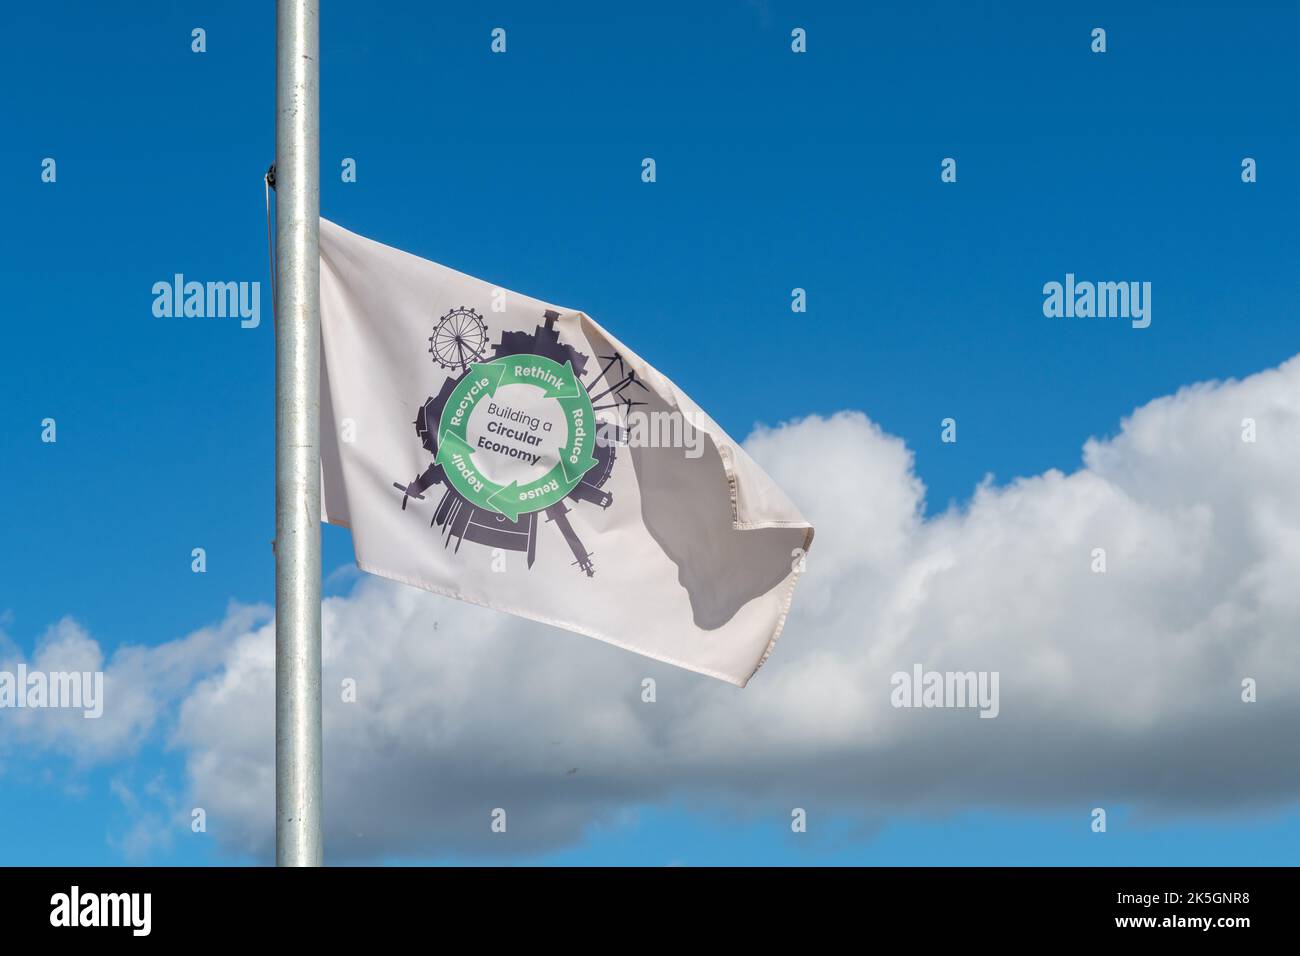 Building a Circular Economy flag Stock Photo